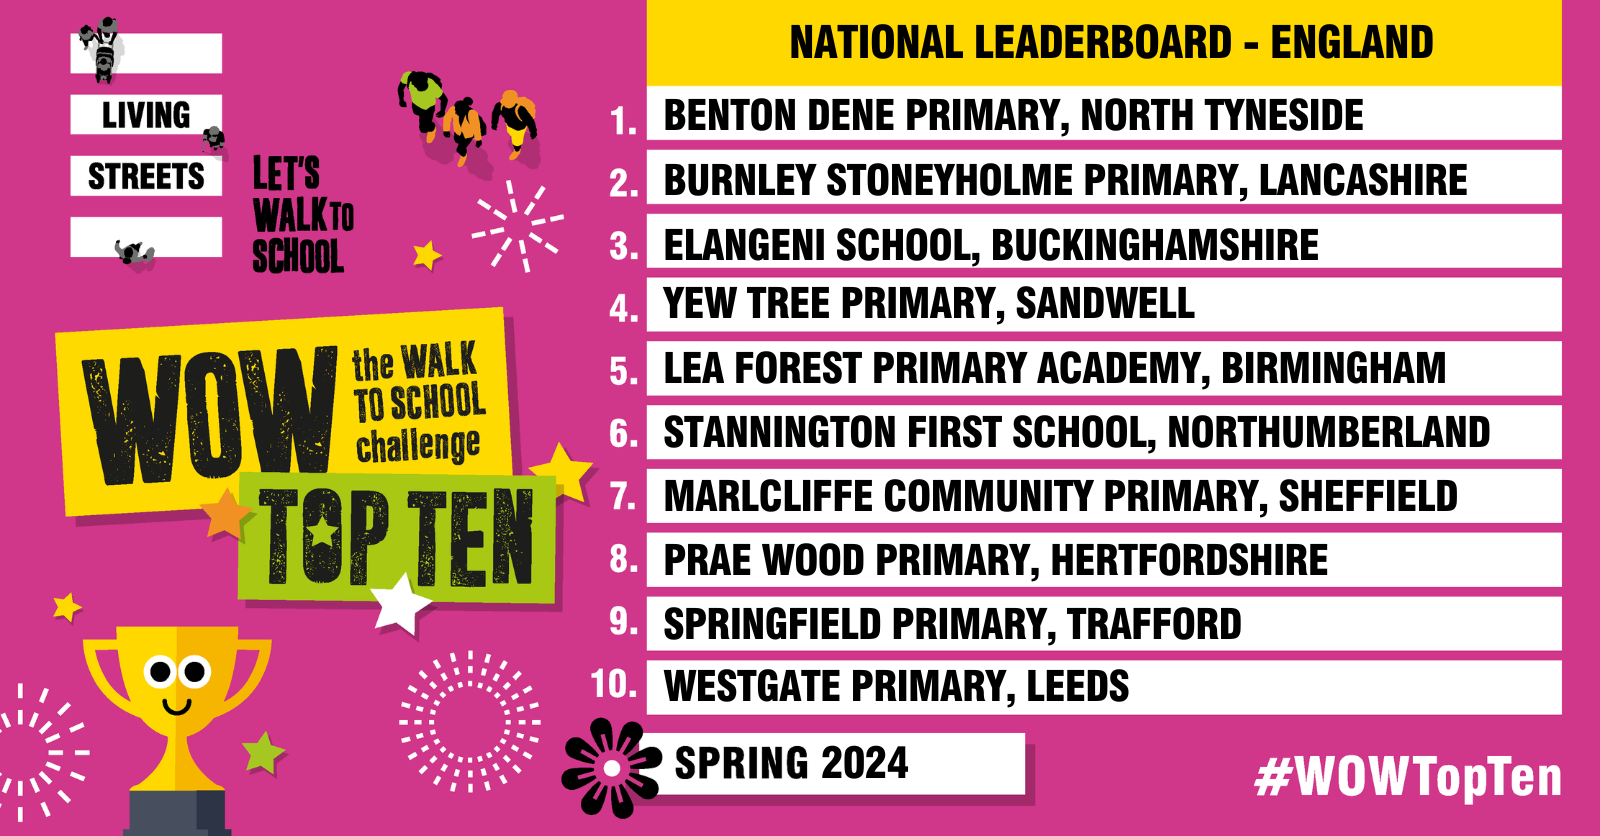 WOW Top Ten Leaderboard - Benton Dene Primary School is first place